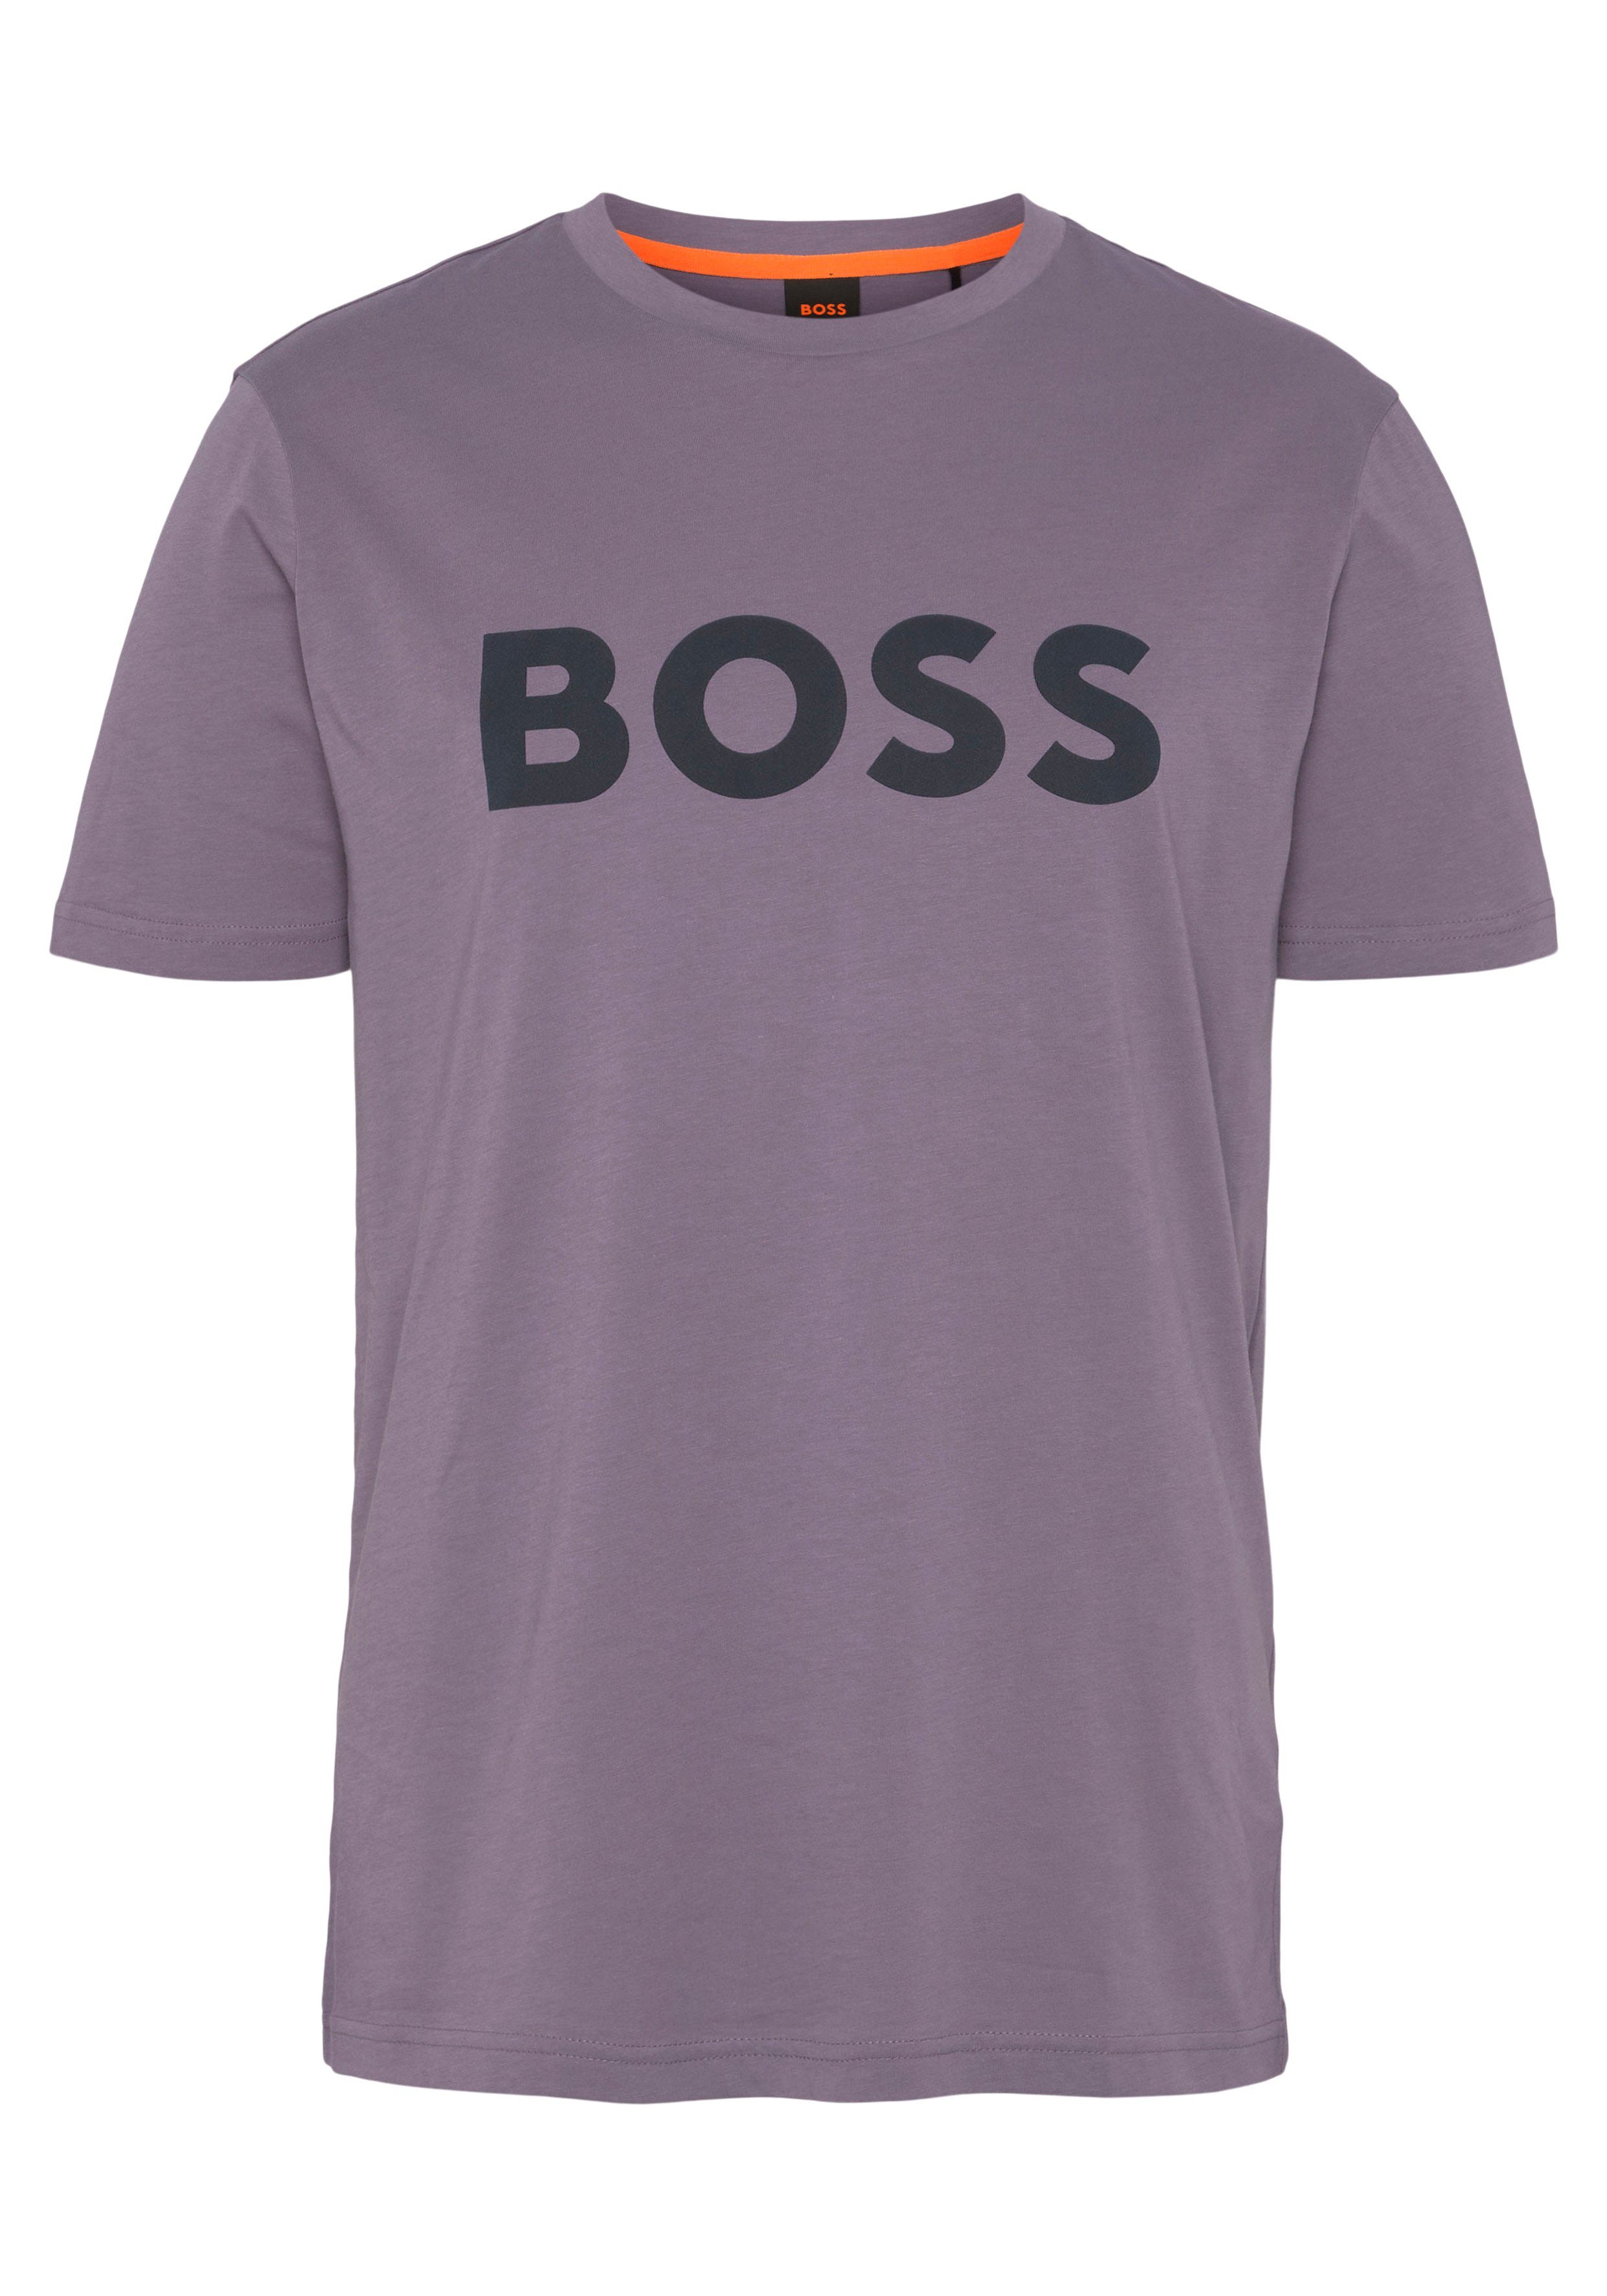 BOSS ORANGE T-Shirt Thinking 1 10246016 01 mit großem BOSS Druck auf der Brust purple511